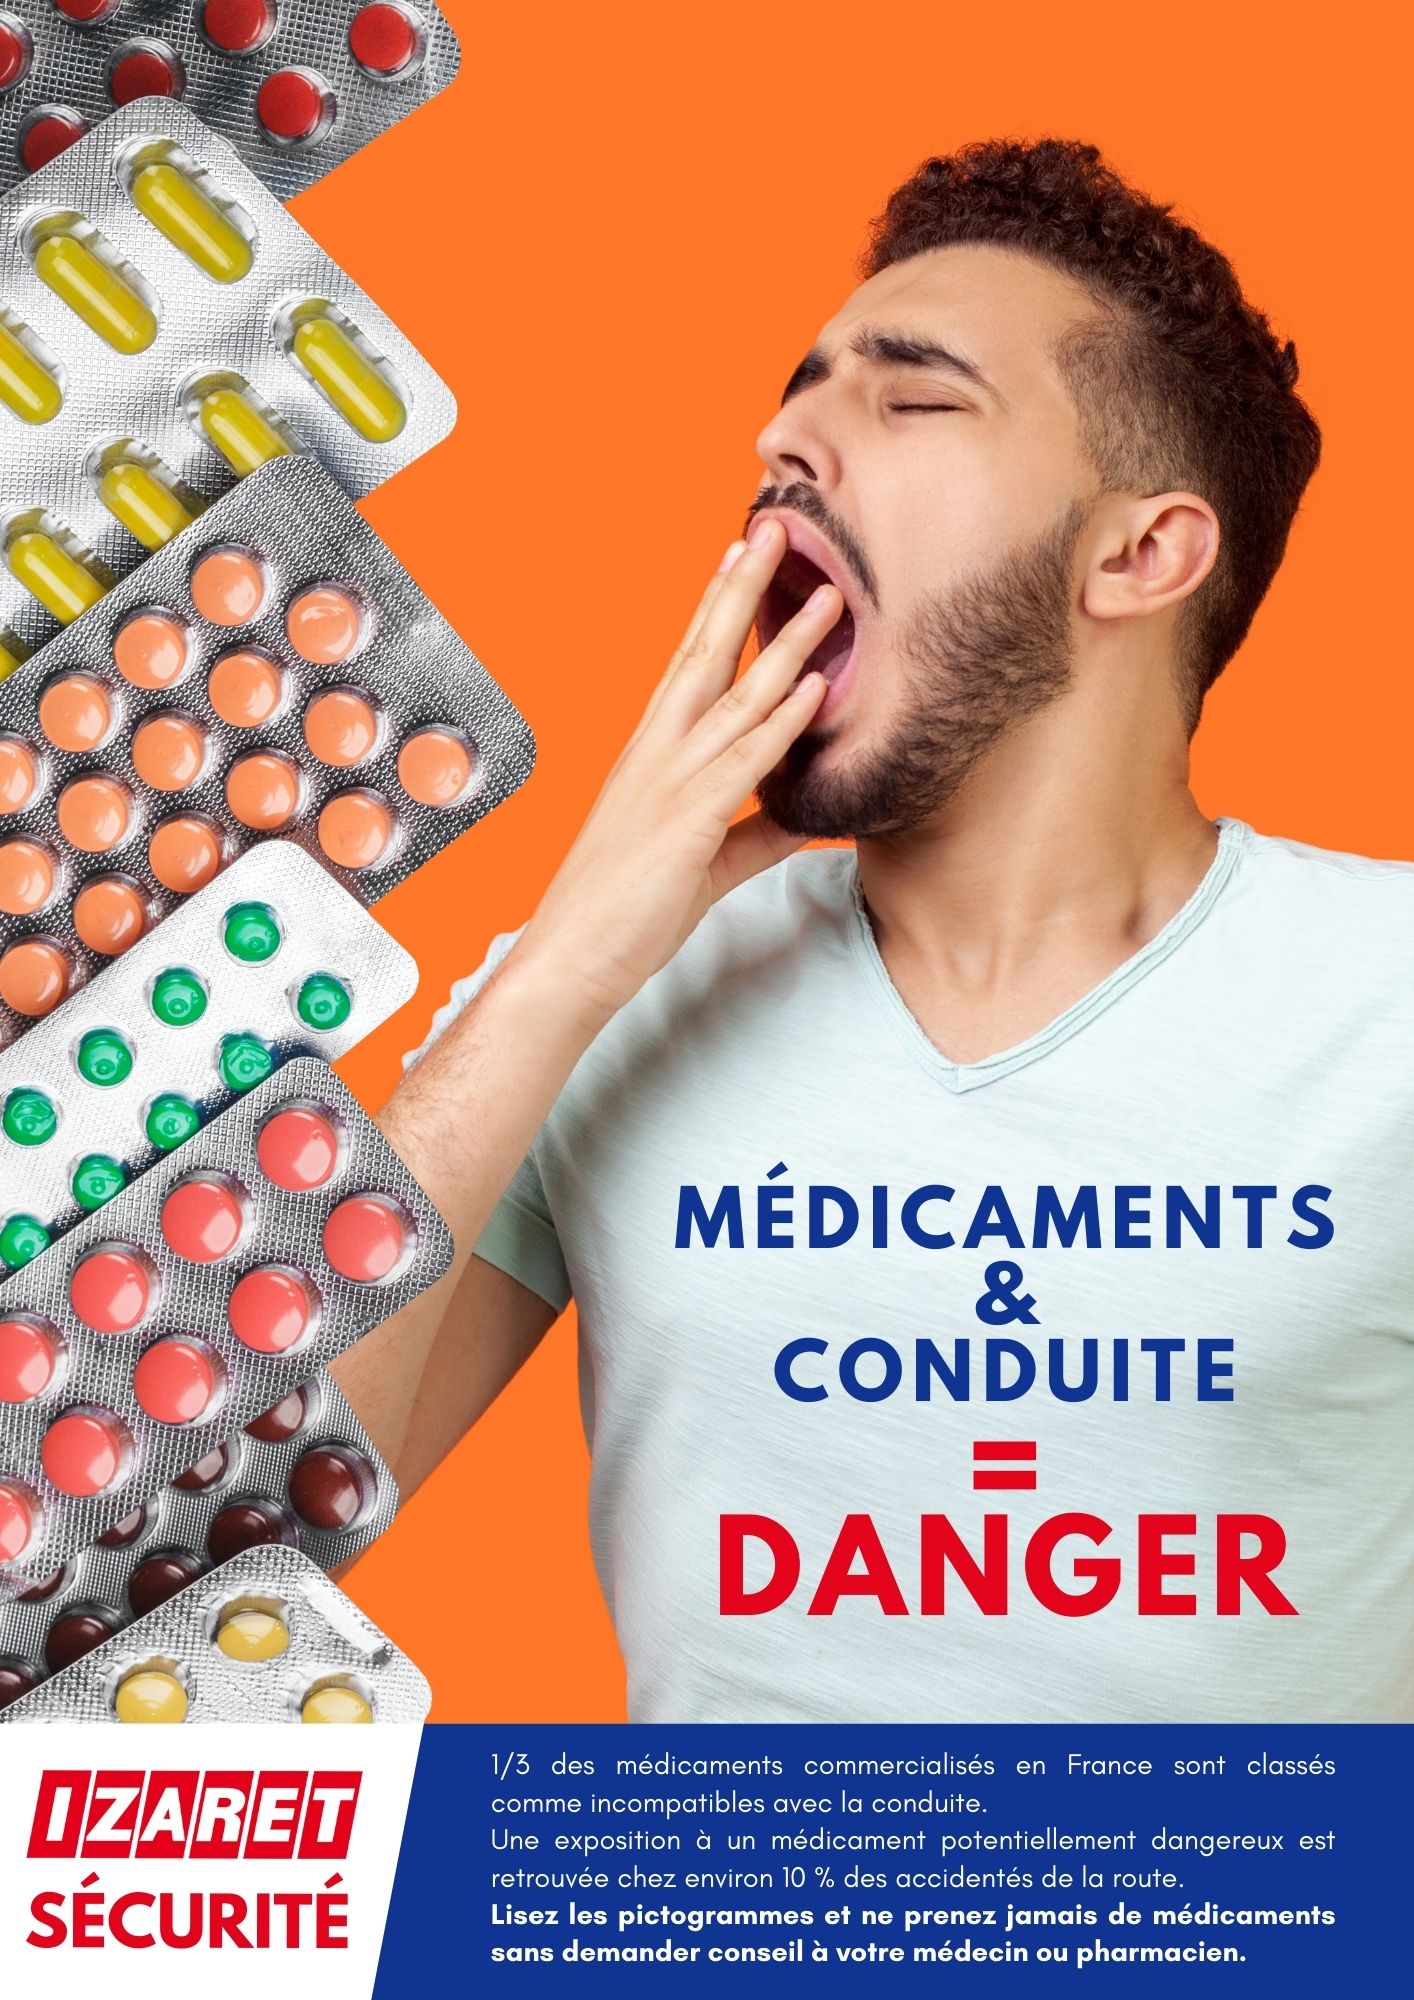 IZARET sécurité médicament conduite danger